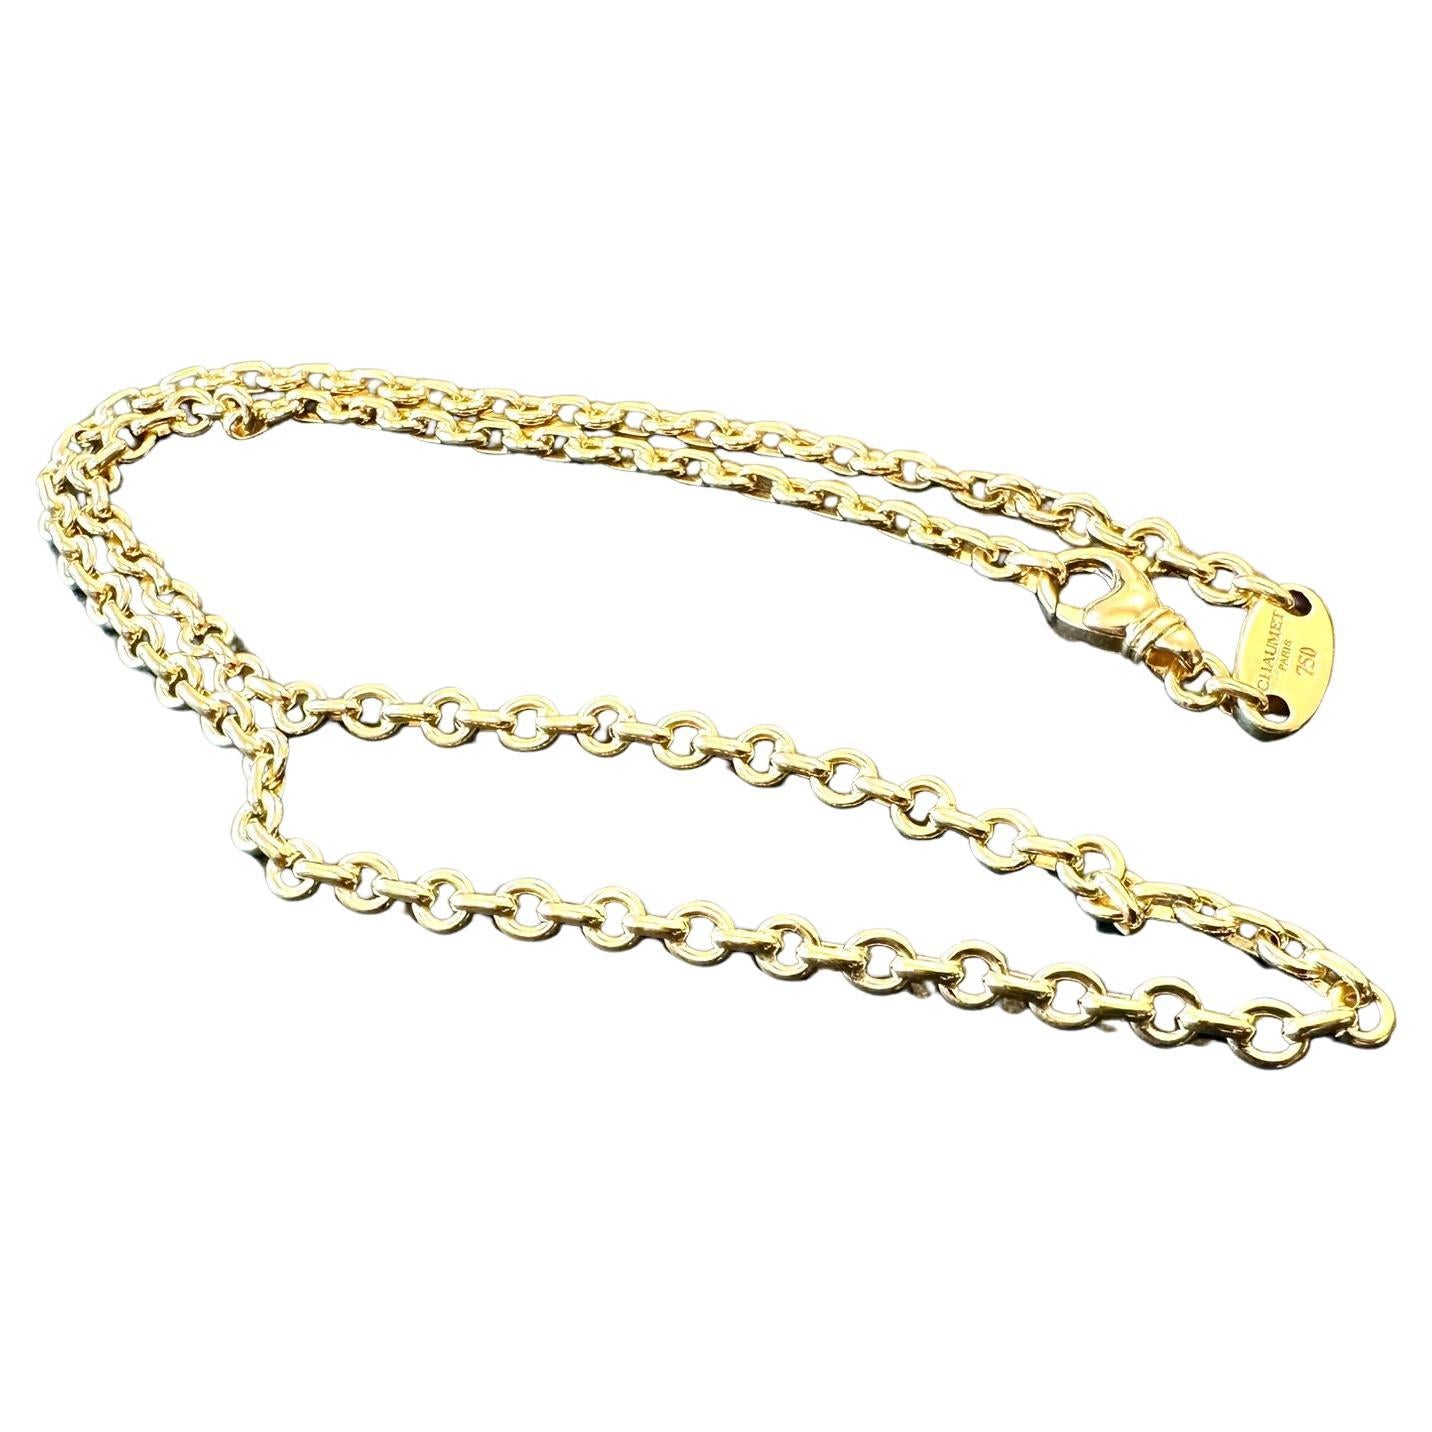 La chaîne en or jaune 18 carats de Chaumet est un accessoire exquis et intemporel, qui témoigne de l'engagement de la marque en faveur du luxe et de l'artisanat. Fabriquée en or jaune 18 carats de haute qualité, cette chaîne dégage un éclat